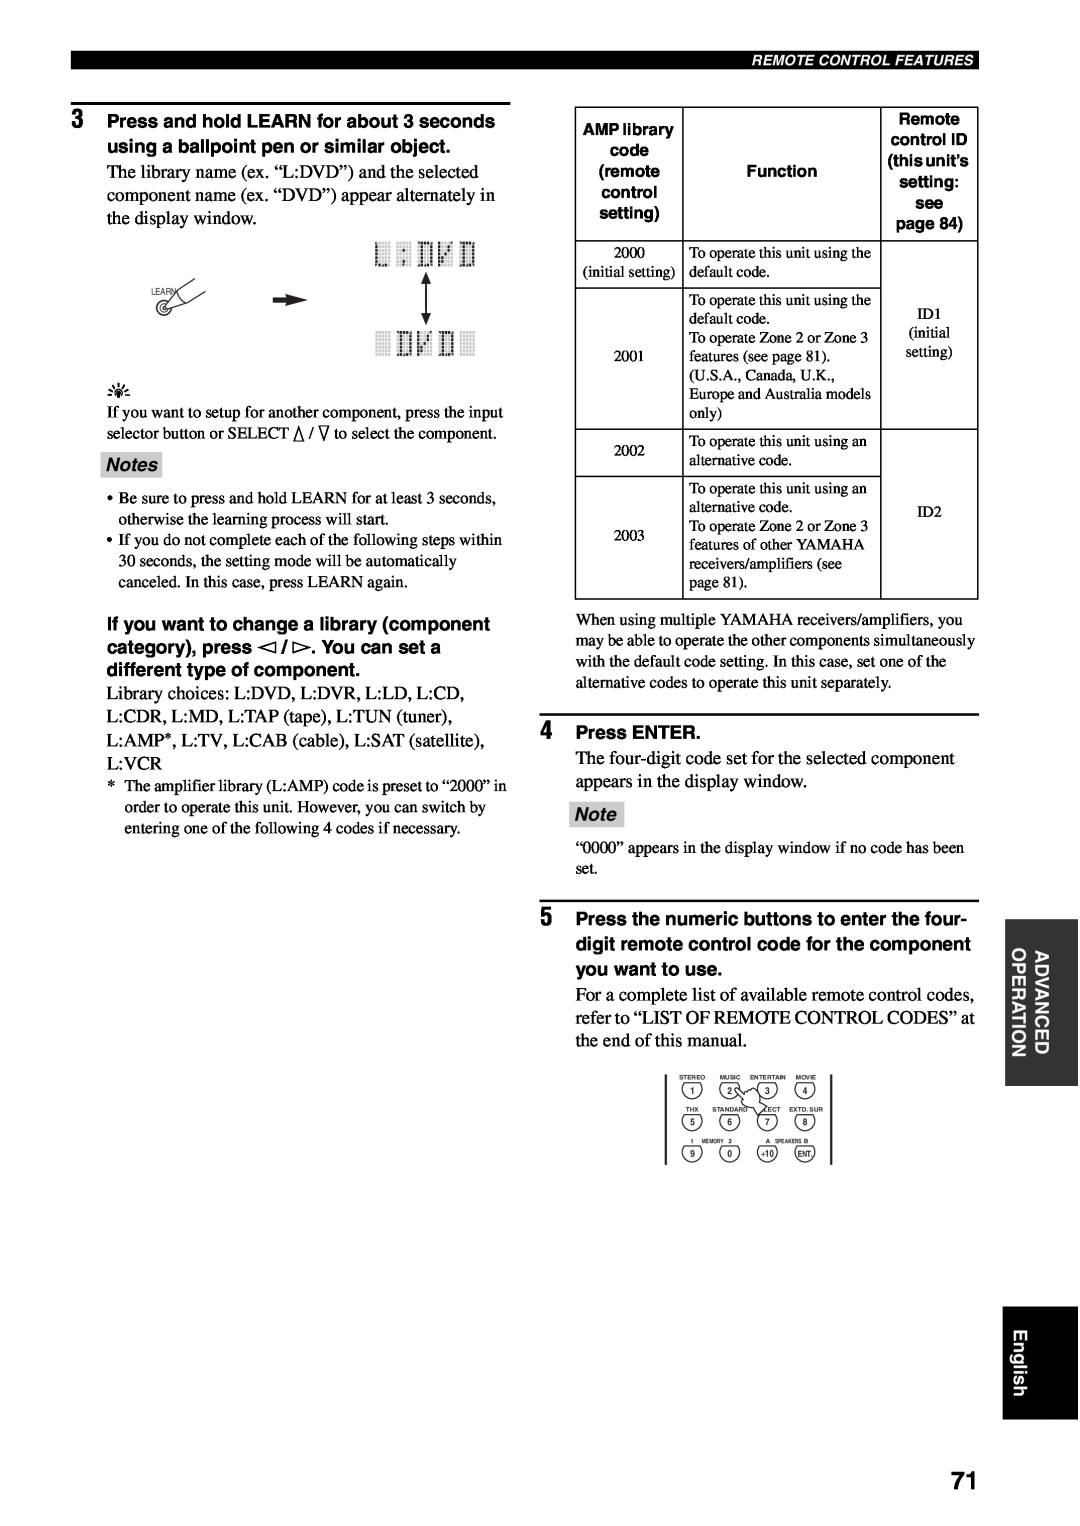 Yamaha RX-V2500 owner manual 4Press ENTER, Notes 